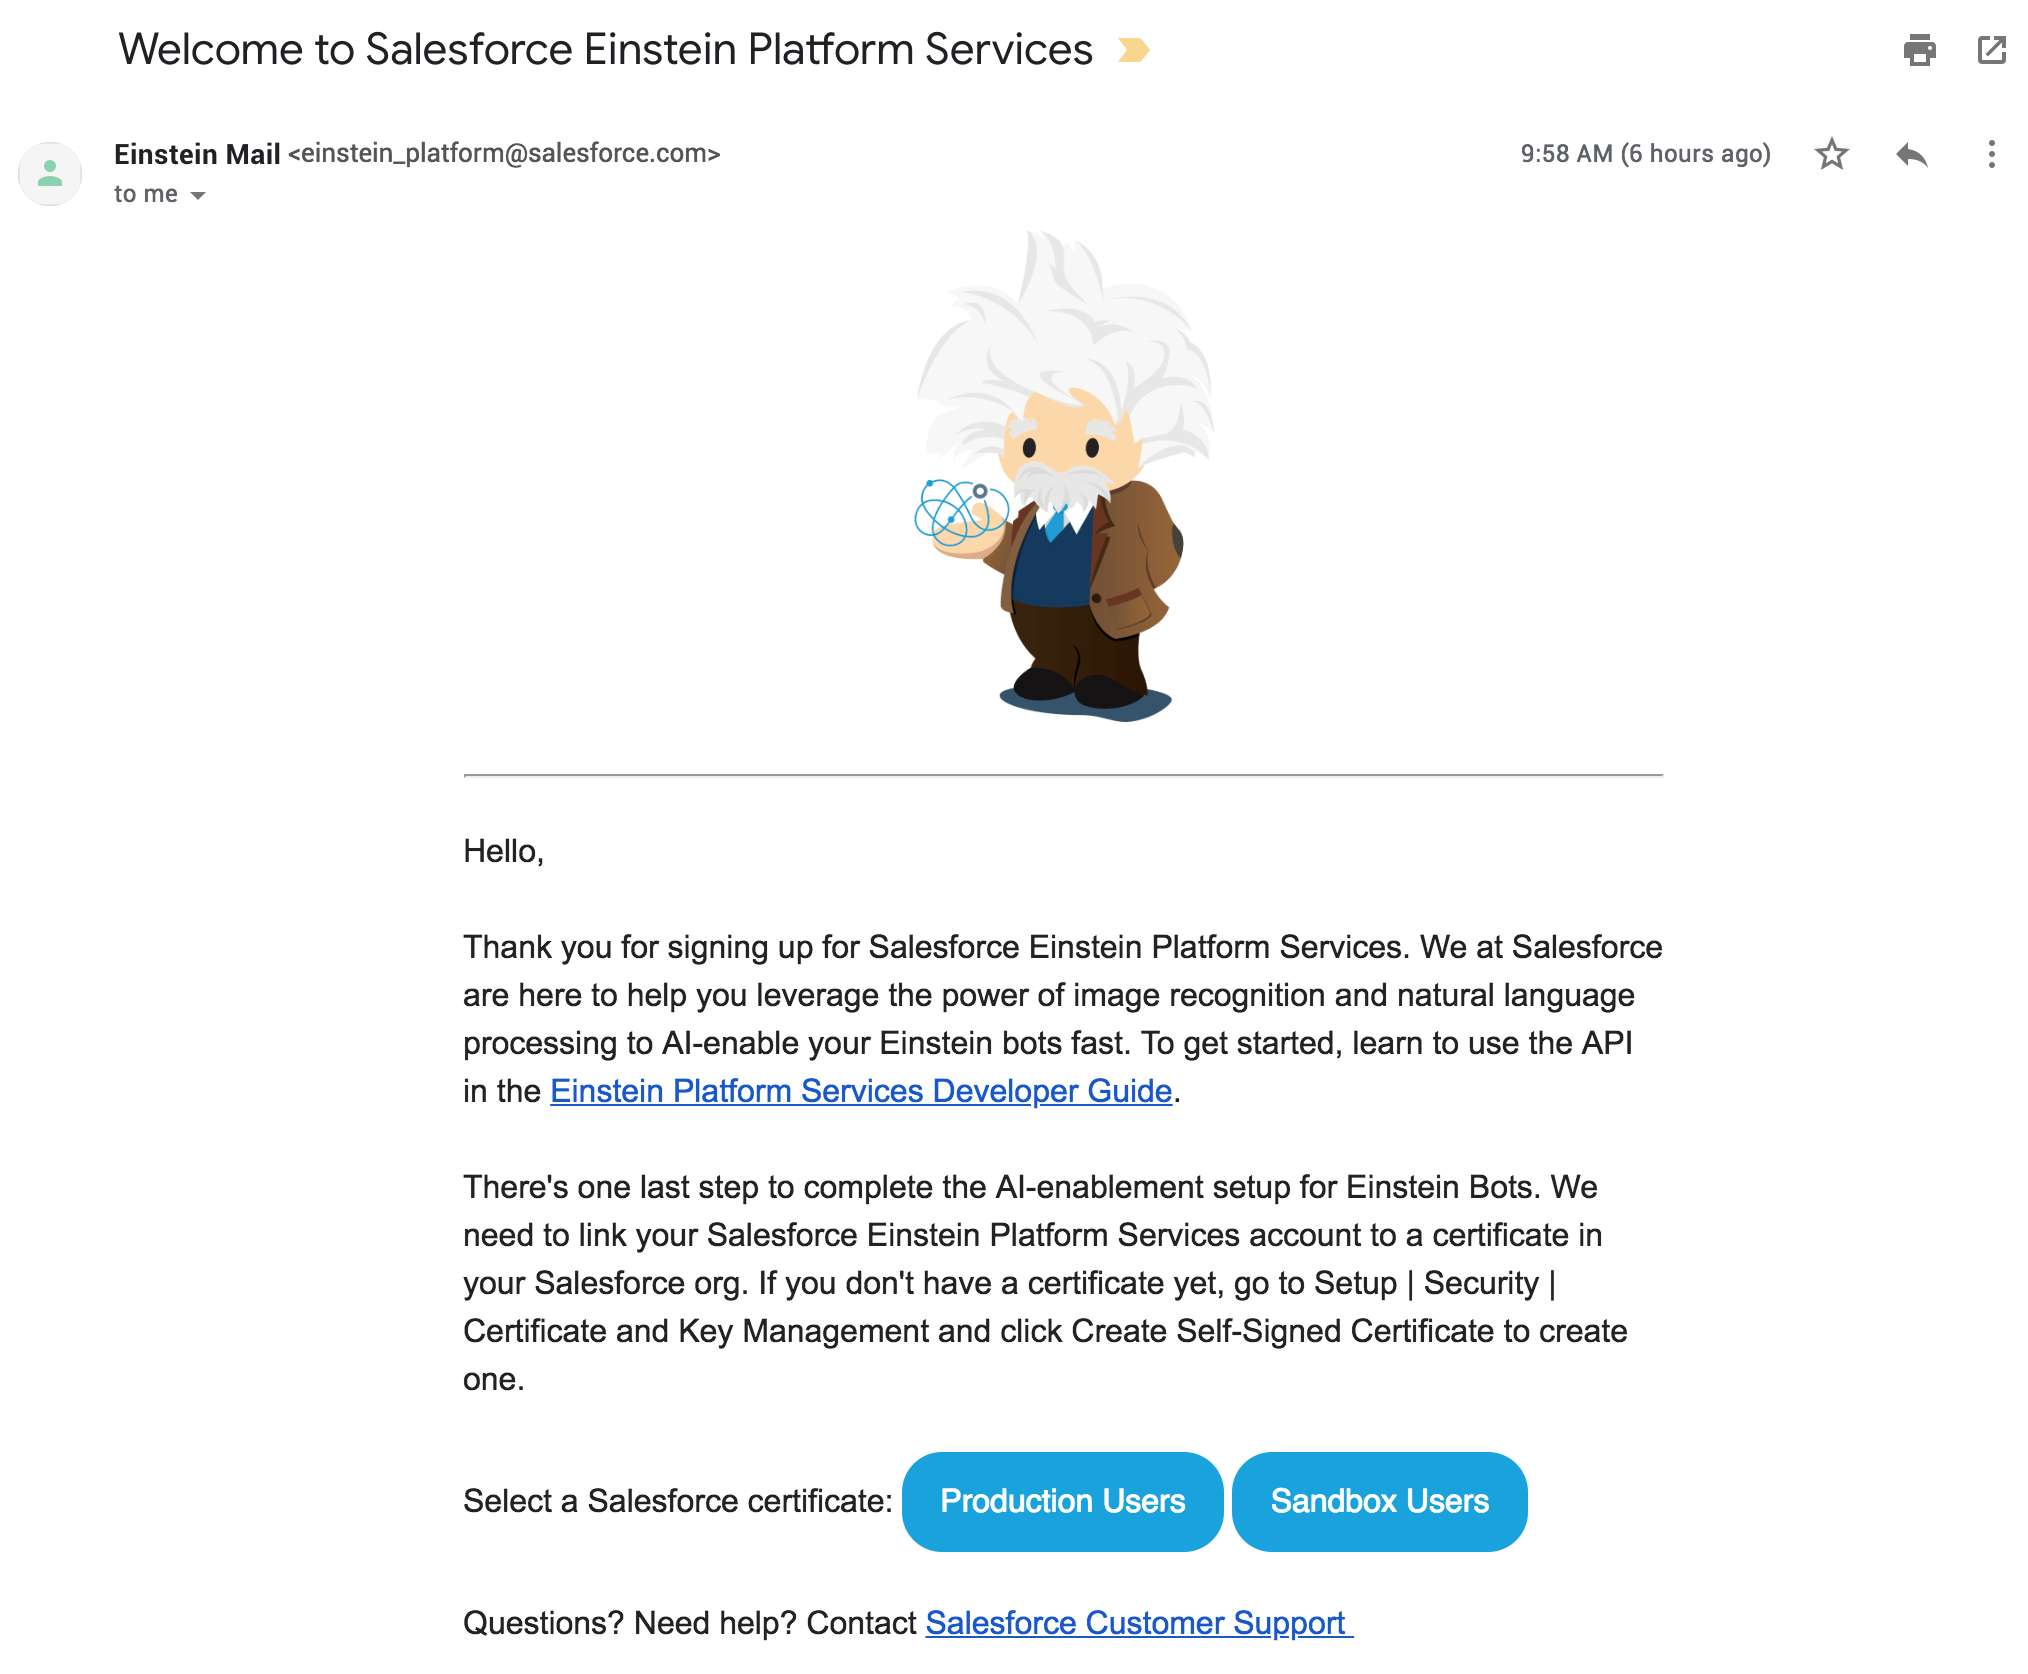 Einstein Platform Services Welcome Email